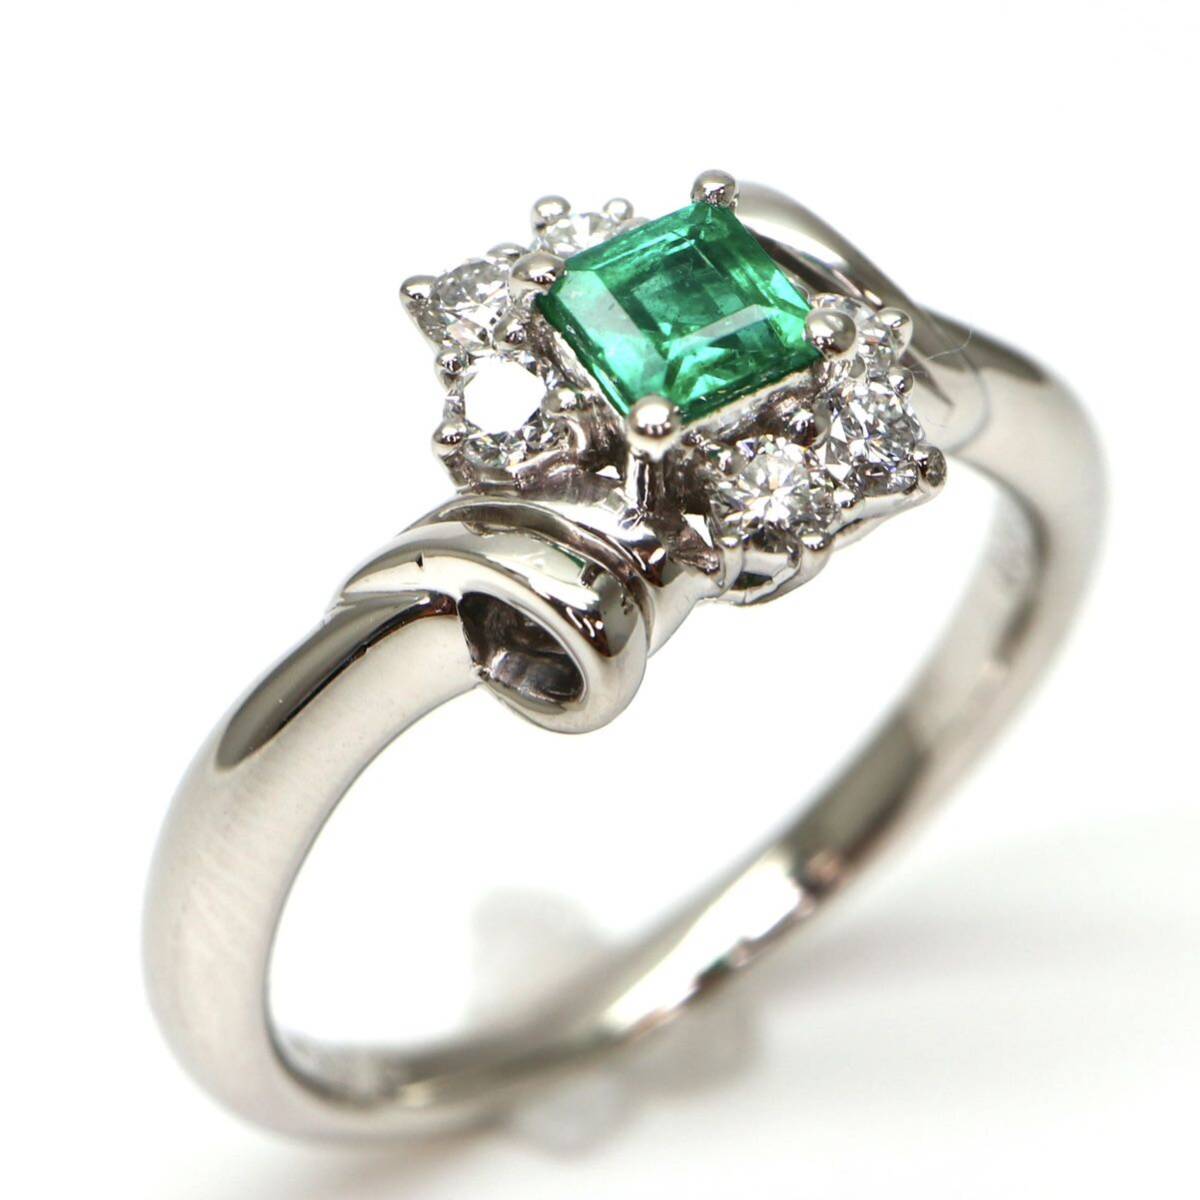 POLA jewelry(ポーラ)ソーティング付き◆Pt900 エメラルド/天然ダイヤモンドリング◆M 約5.5g 約11.5号 emerald diamond ring指輪 EC1/EC1_画像1